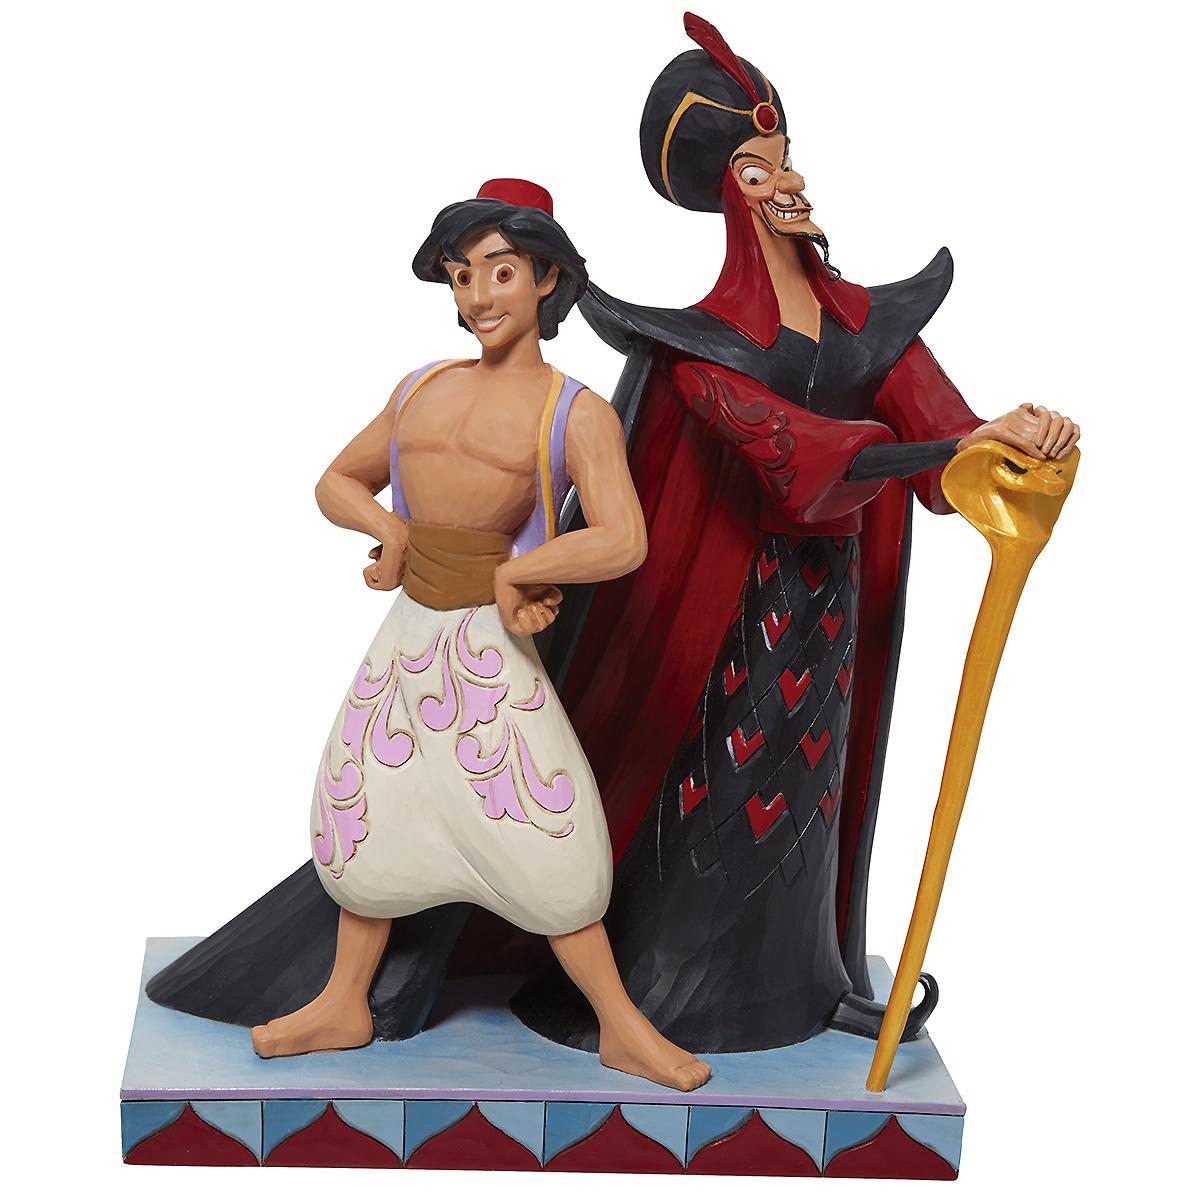 Aladdin And Jafar Good Vs. Evil Jim Shore Figure